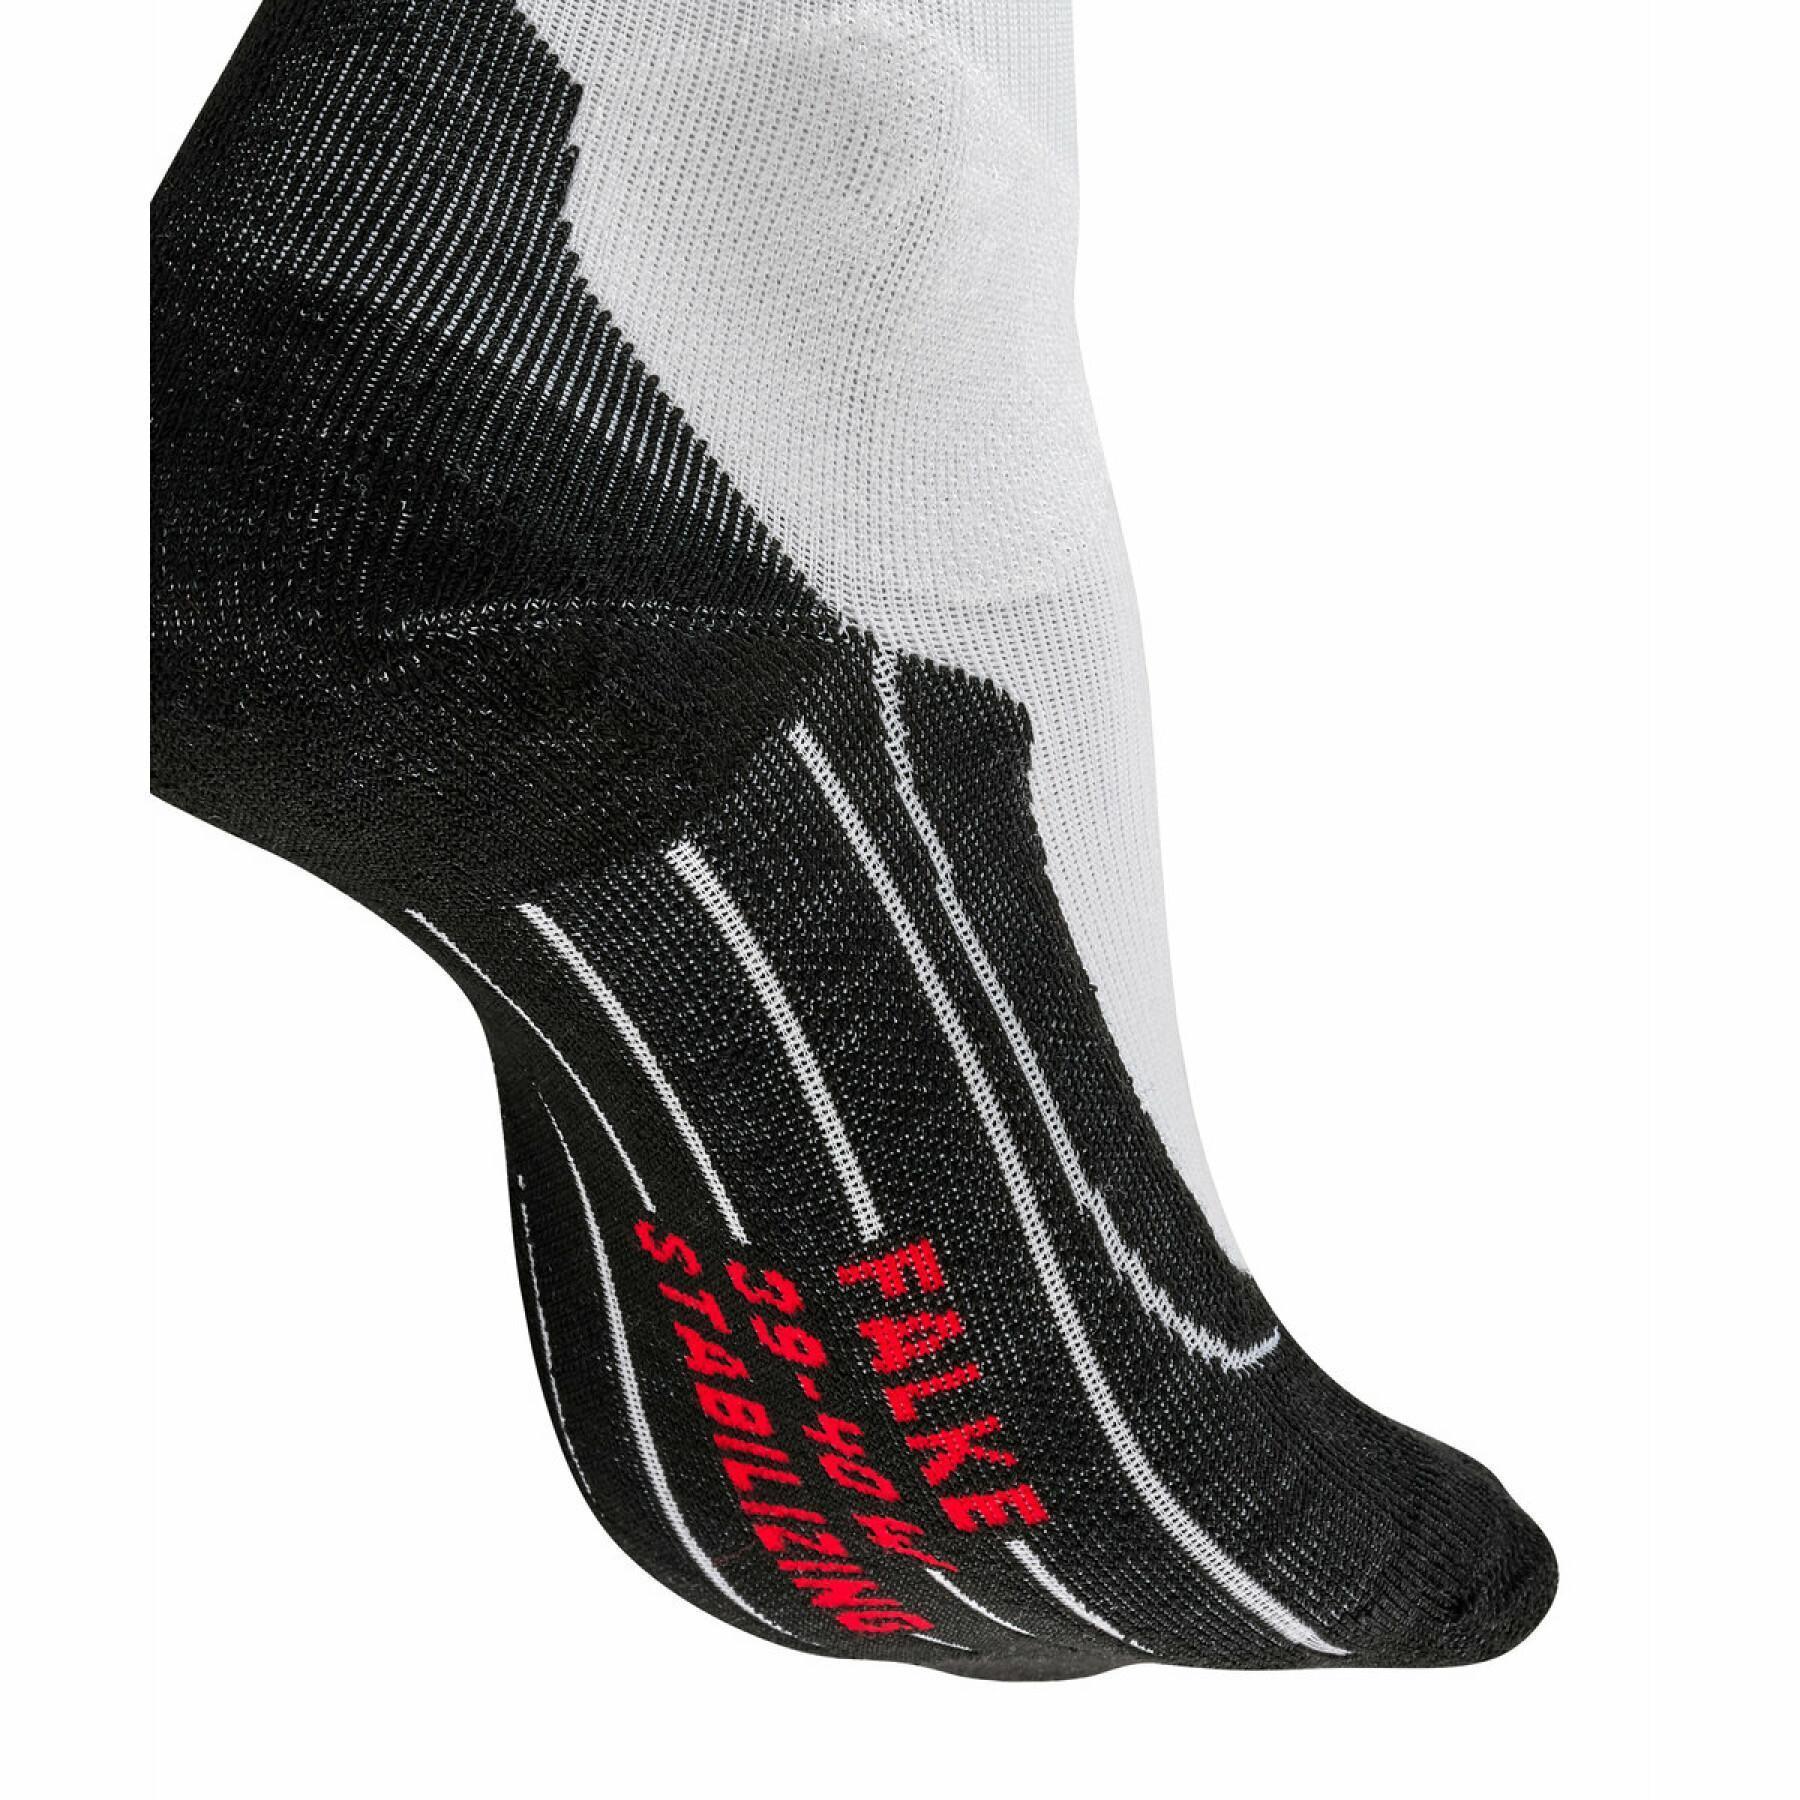 Women's socks Falke Stabilizing Cool